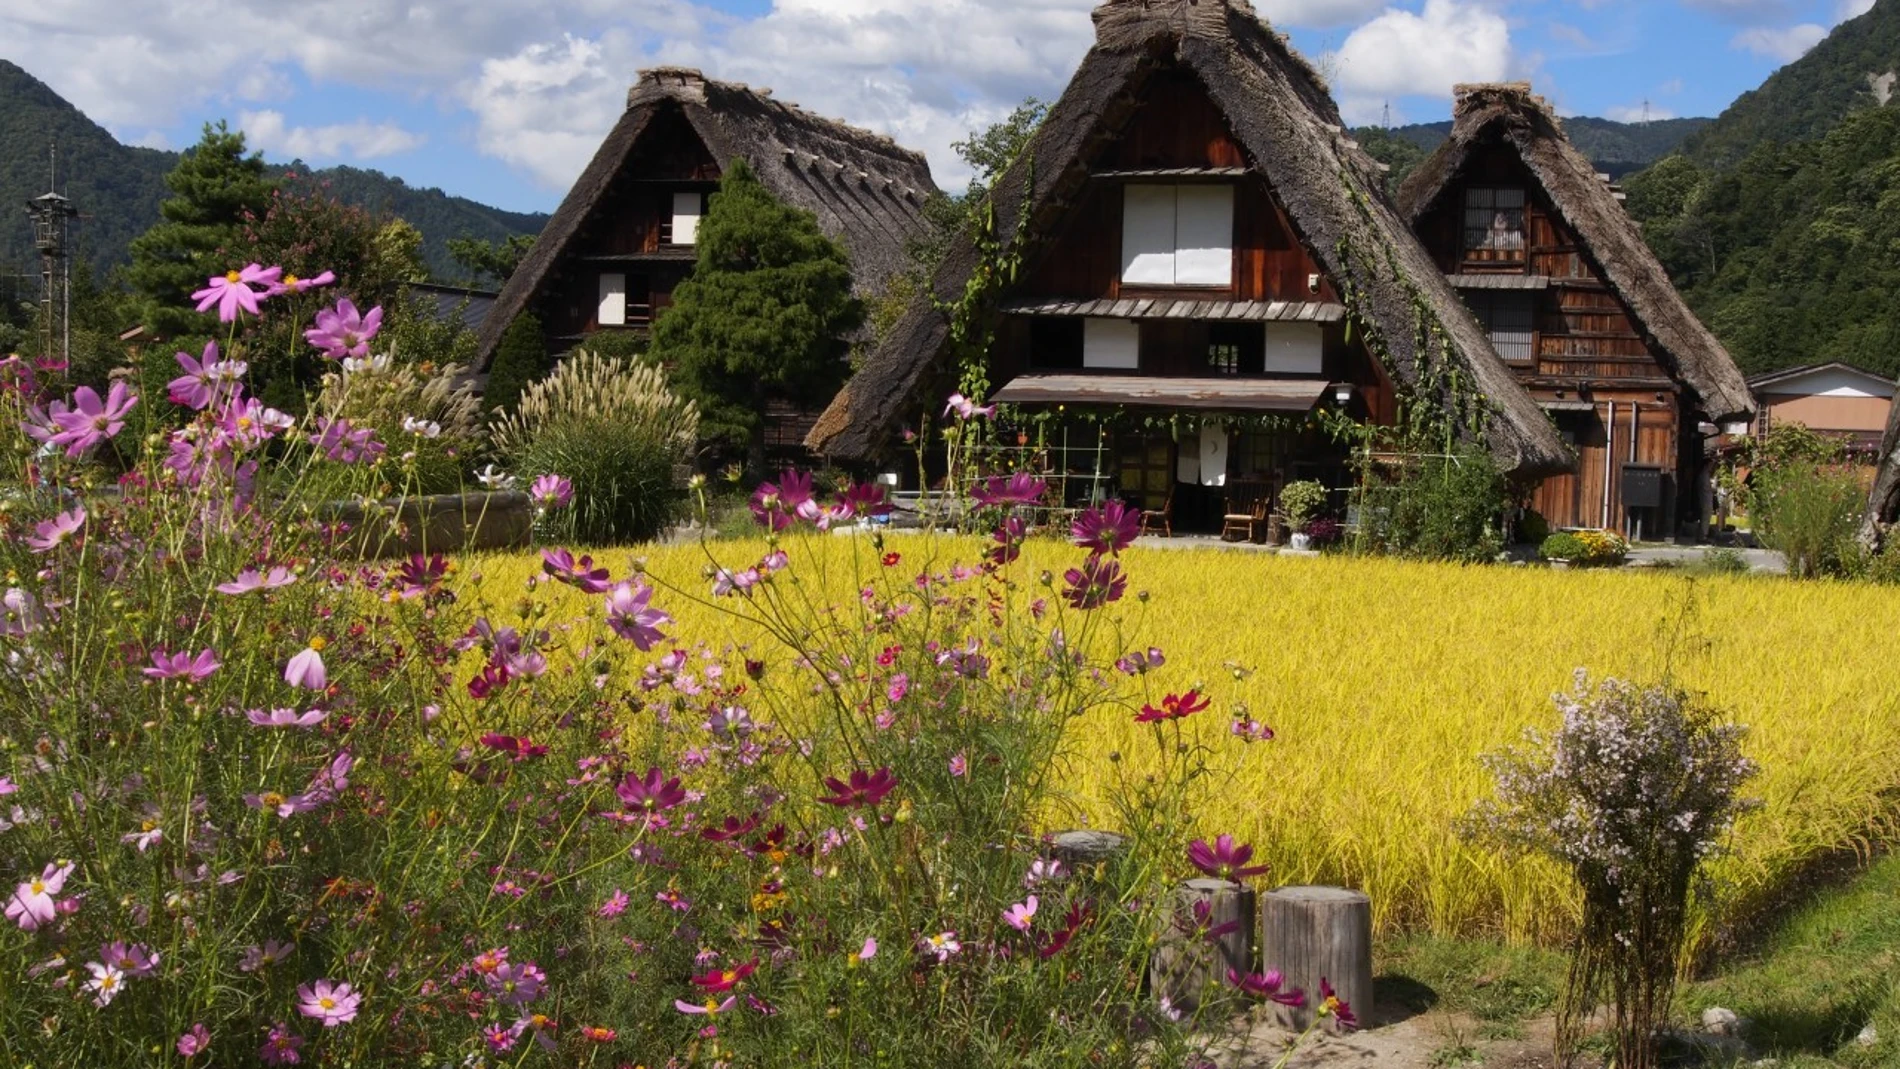 La aldea japonesa perfecta para 'instagramers' donde el tiempo se ha detenido